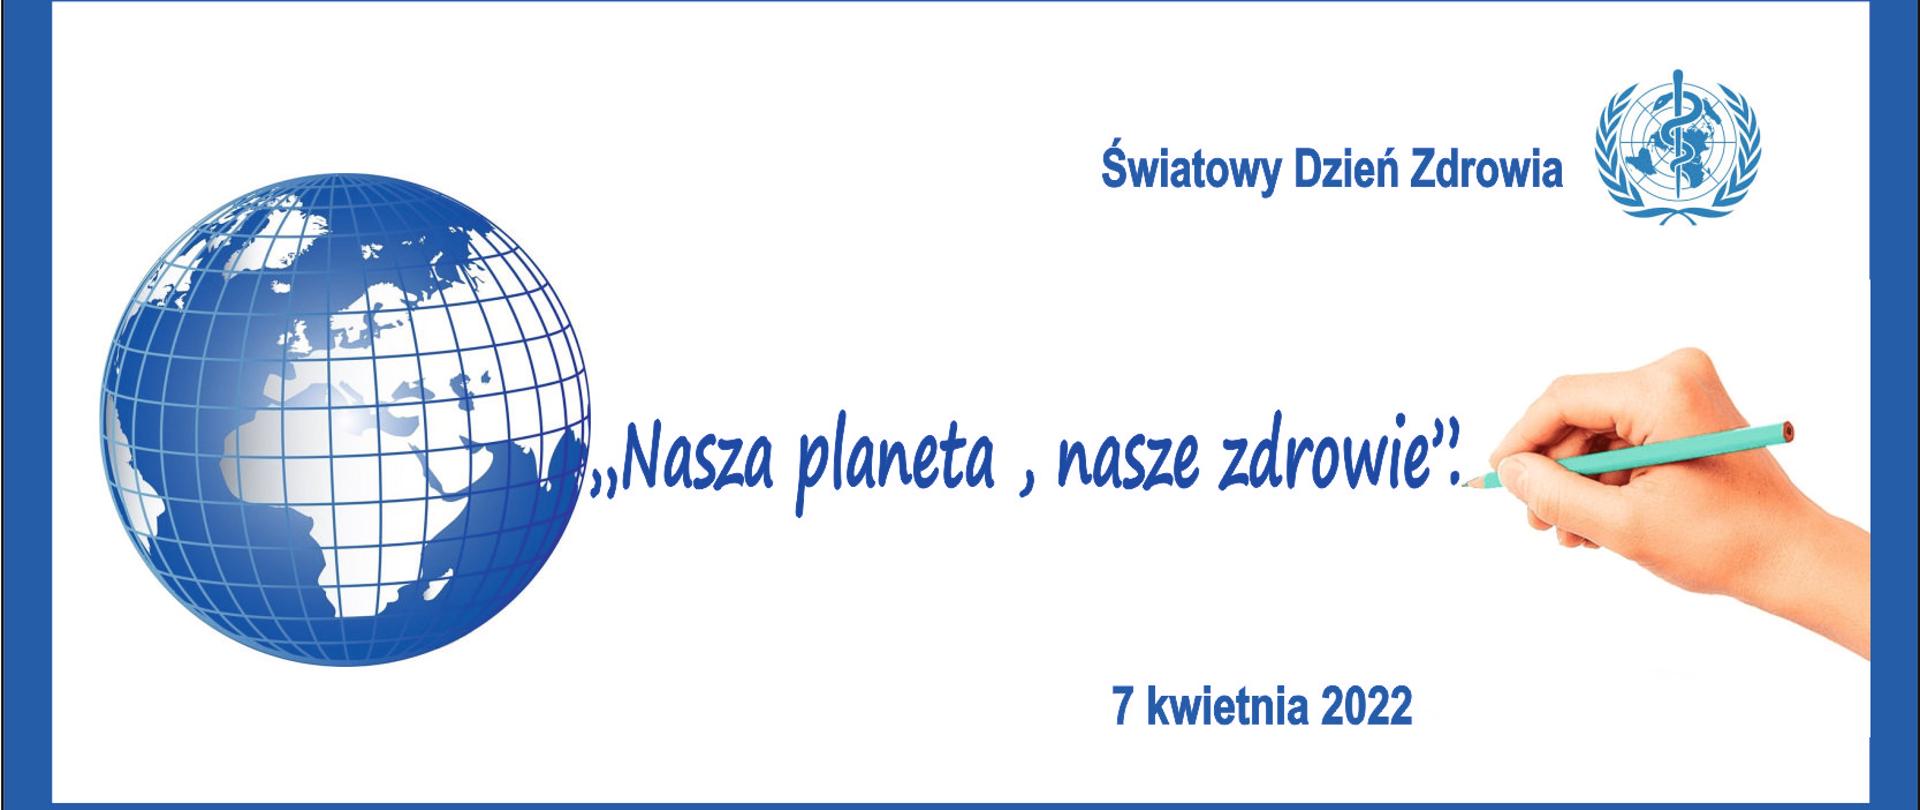 Baner promujący Światowy Dzień Zdrowia: po lewej obraz kuli ziemskiej, po środku hasło"Nasza planeta, nasze zdrowie"